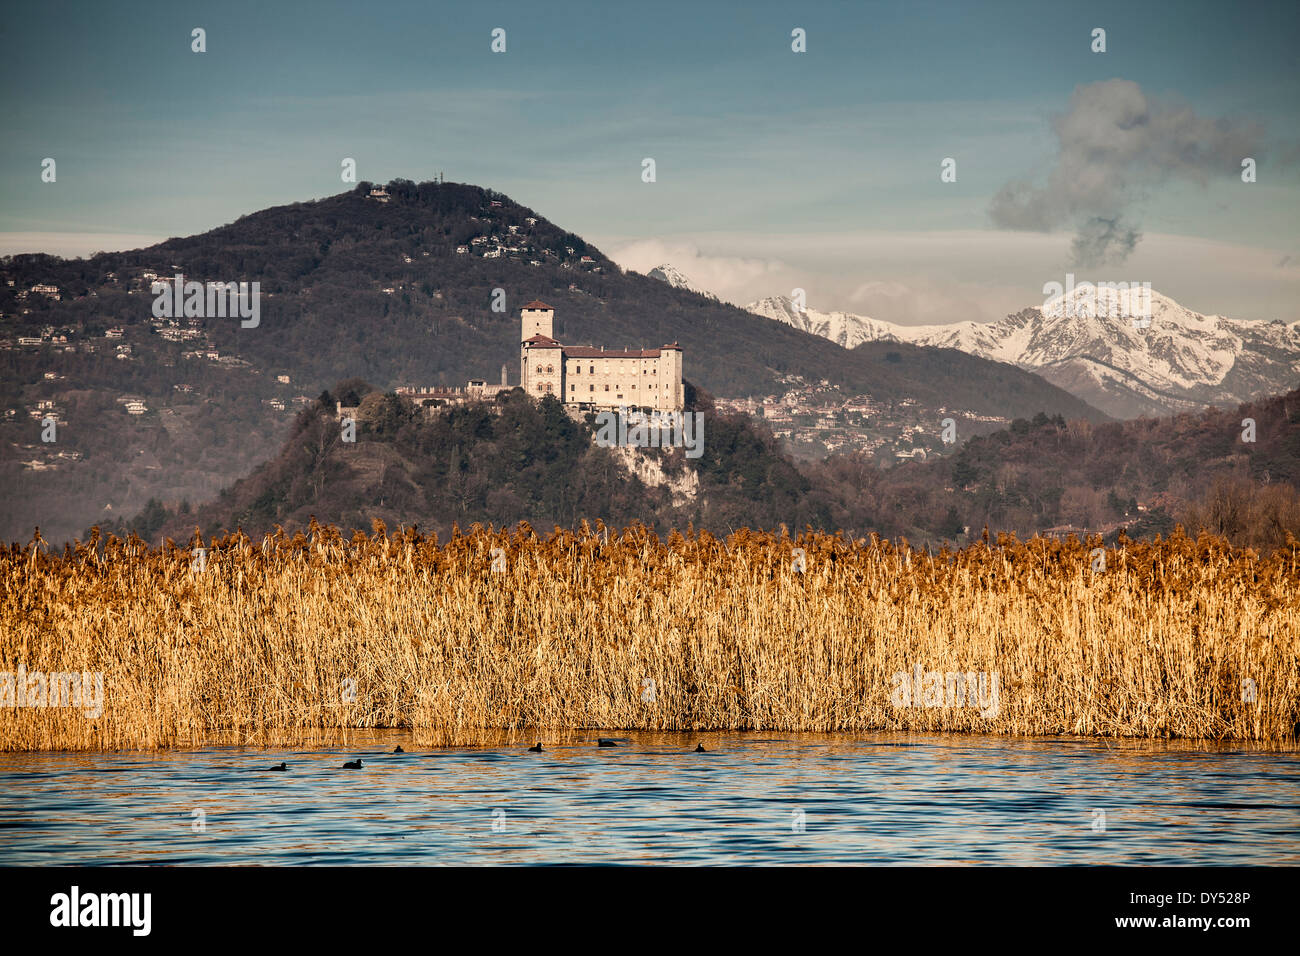 Reeds and Castello di Angera, Lake Maggiore, Italy Stock Photo